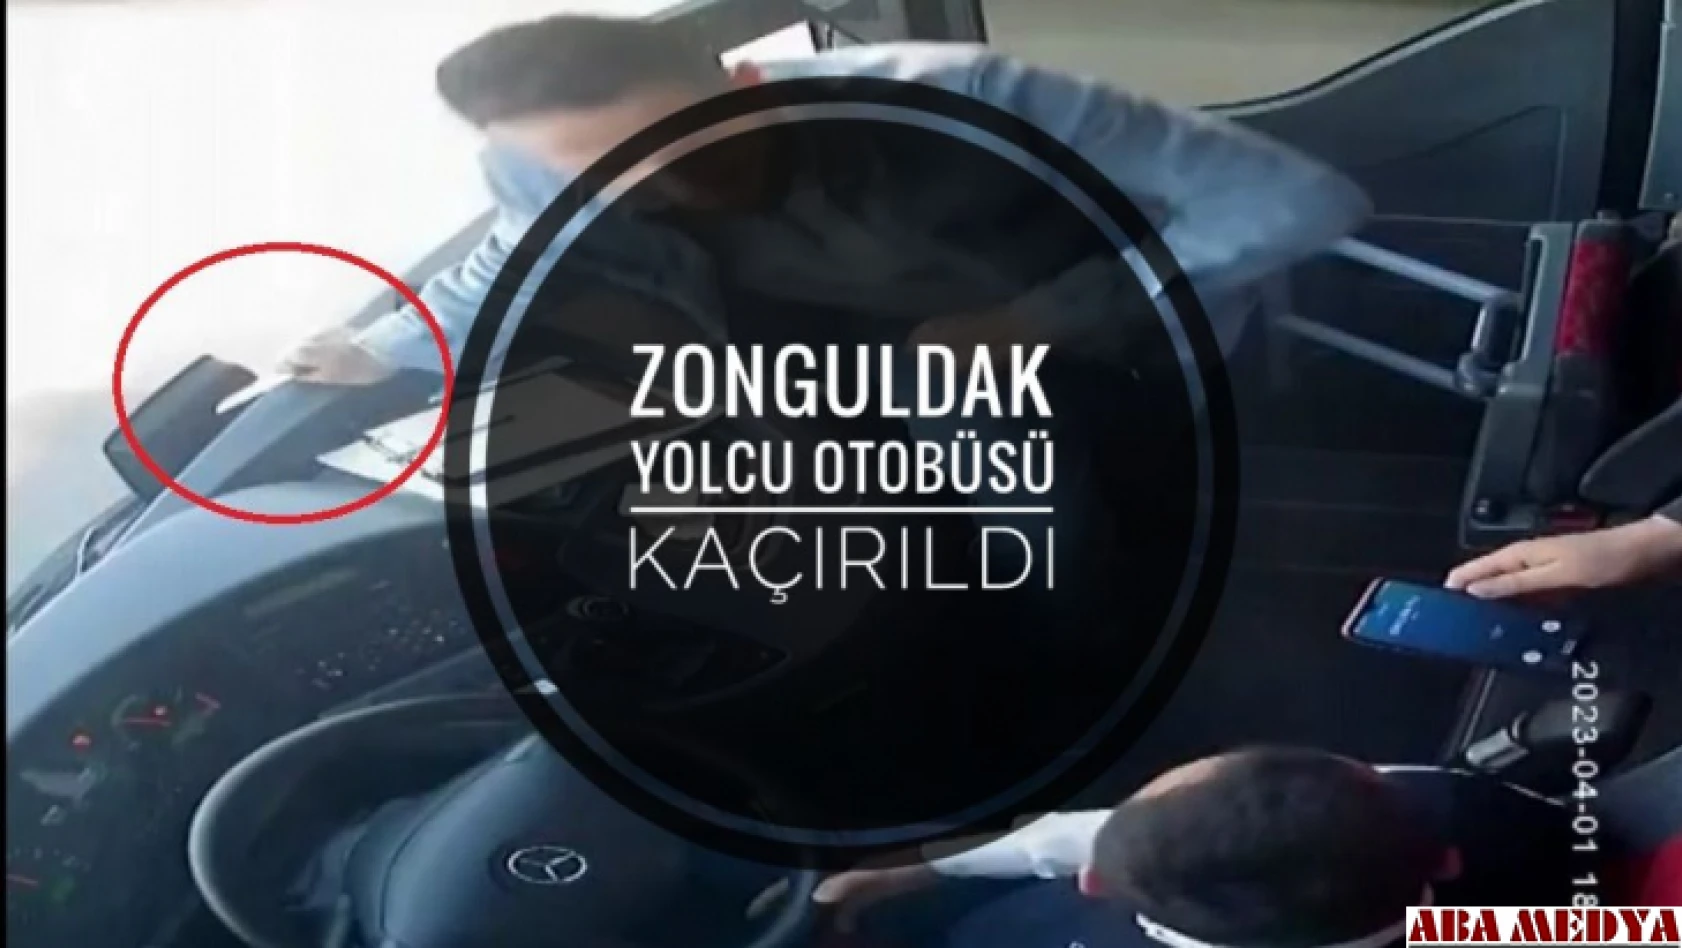 Zonguldak Yolcu otobüsü kaçırıldı